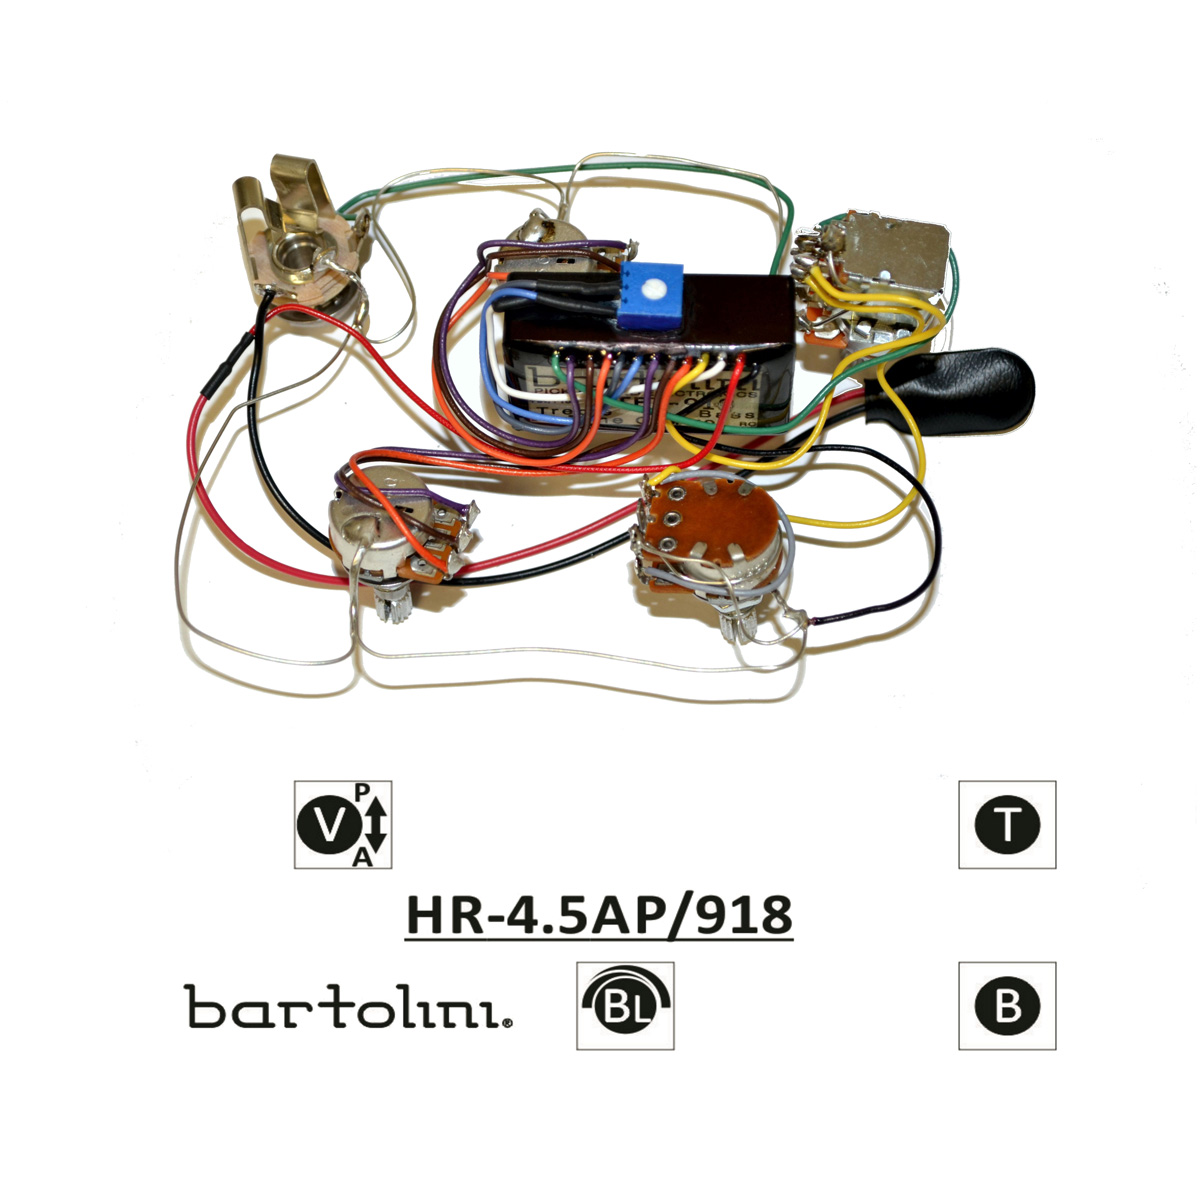 Bartolini HR-4.5AP Pre-Wired 2 Band EQ Active/Passive Vol, blend, individual bass & treble